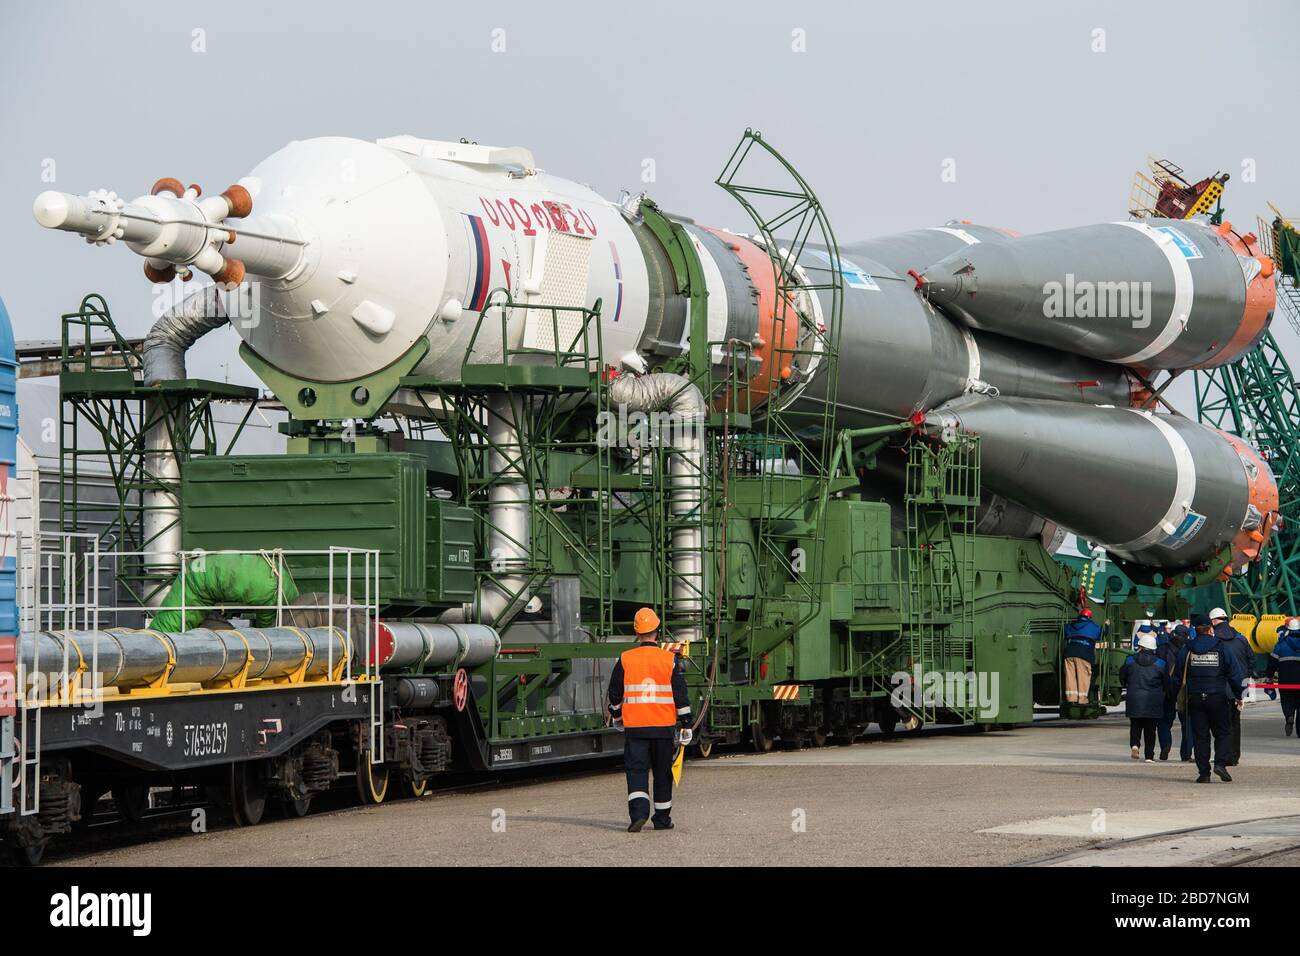 BAIKONUR, KAZAJSTÁN - 06 de abril de 2020 - en el Cosmódromo de Baikonur en Kazajstán, la nave Soyuz MS-16 y su propulsor son transportados desde la i. Foto de stock